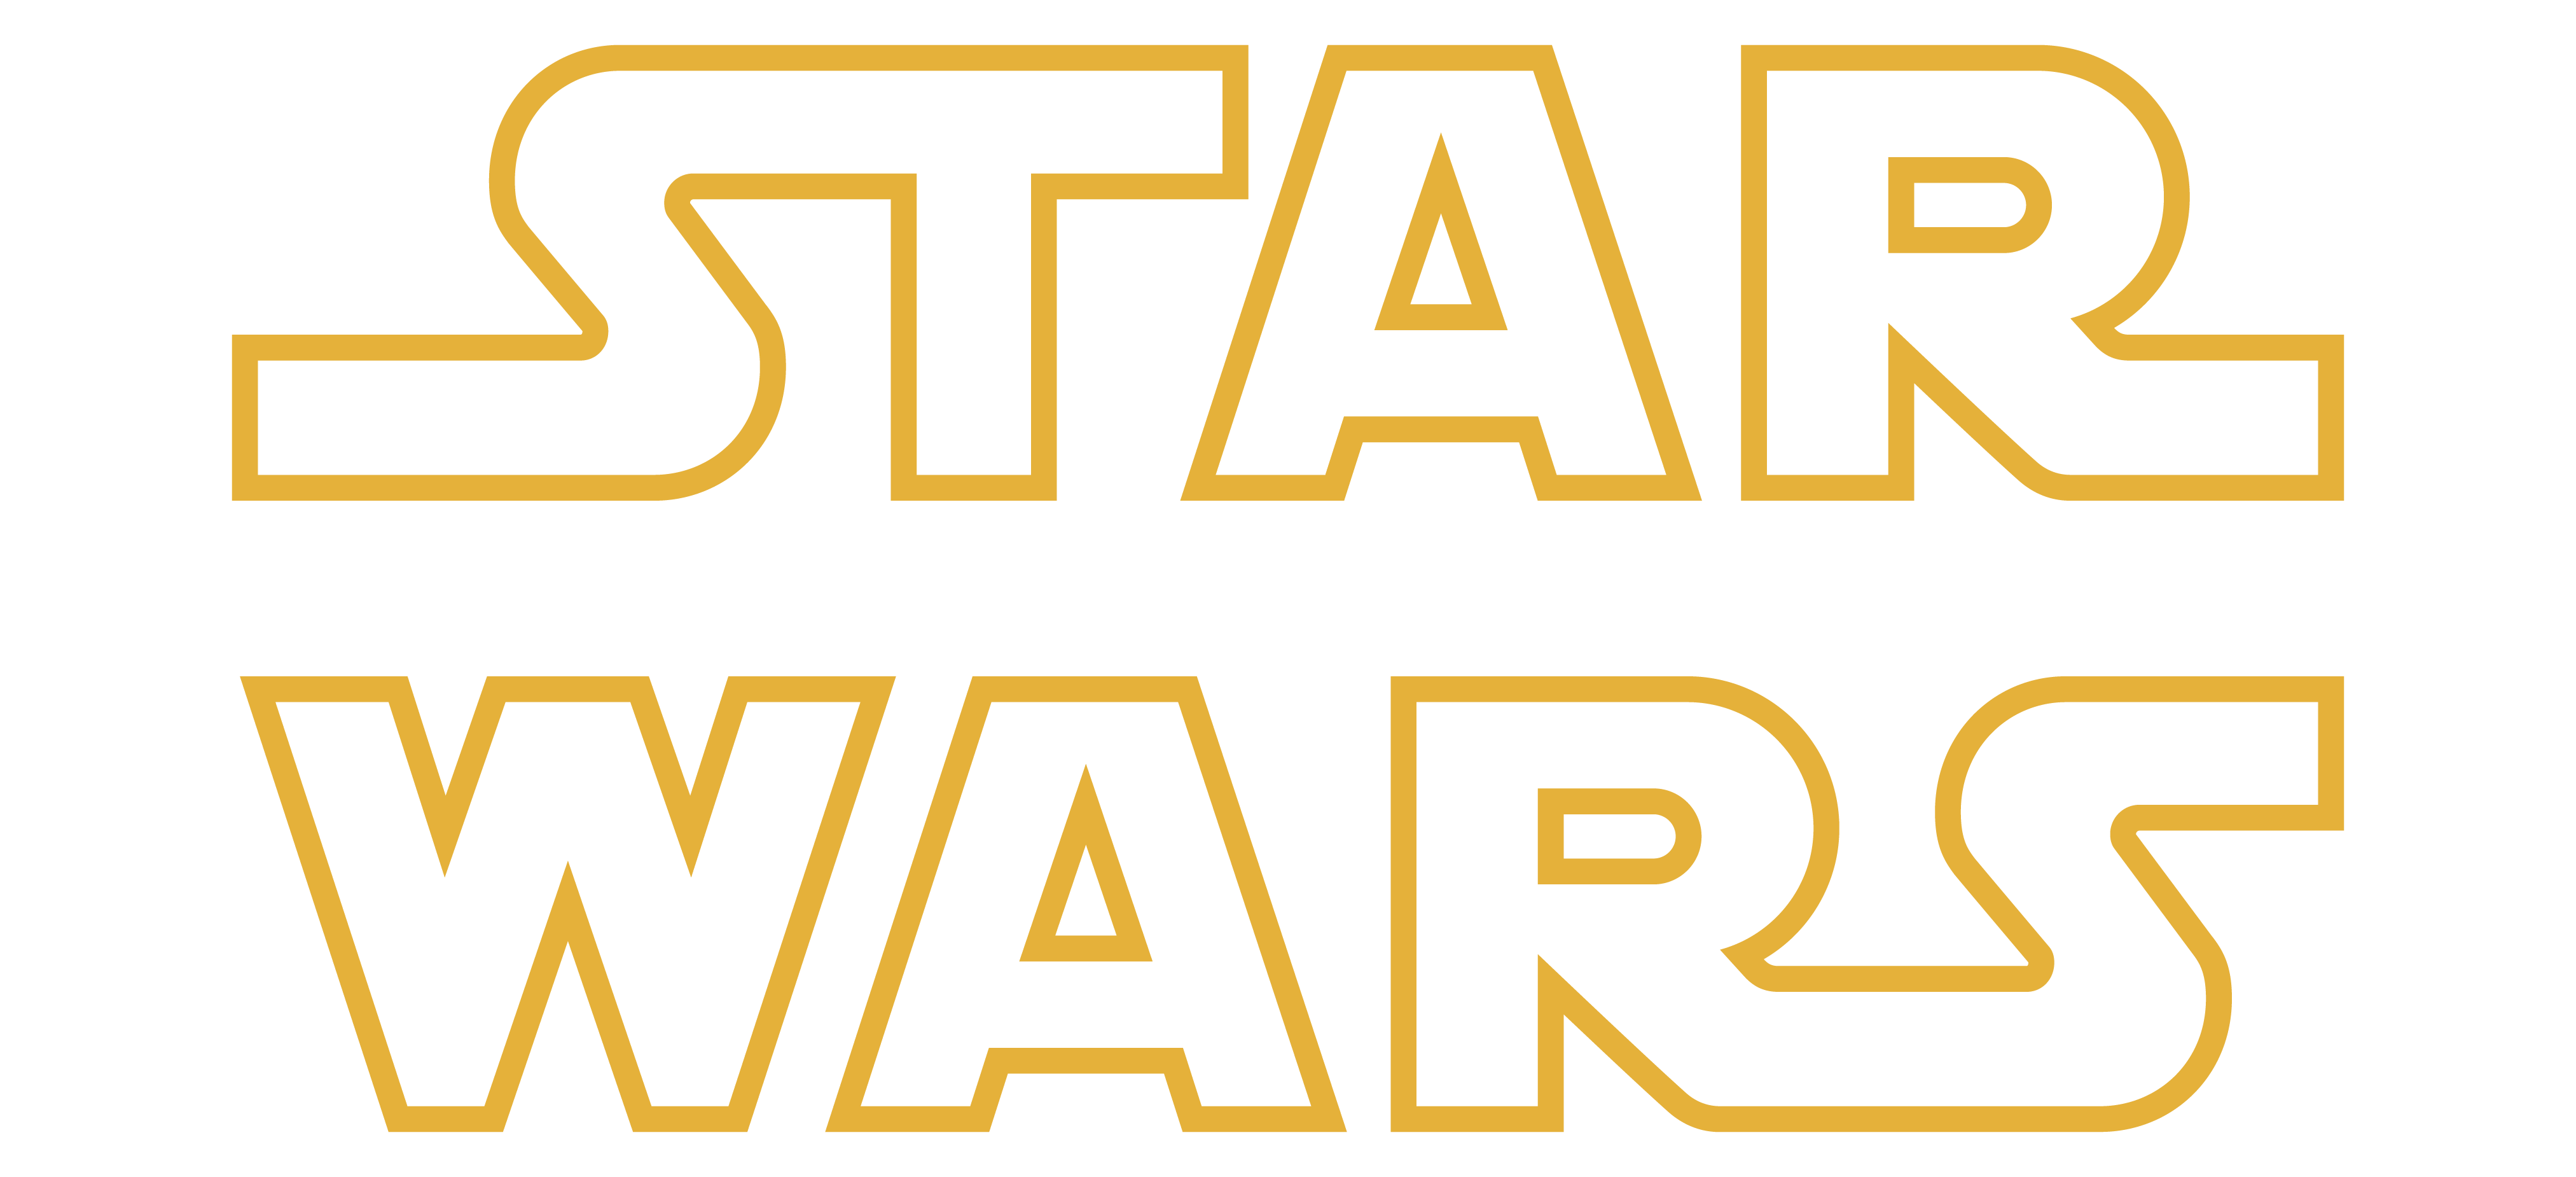 Star Wars Logo Png Transparent Images Png All